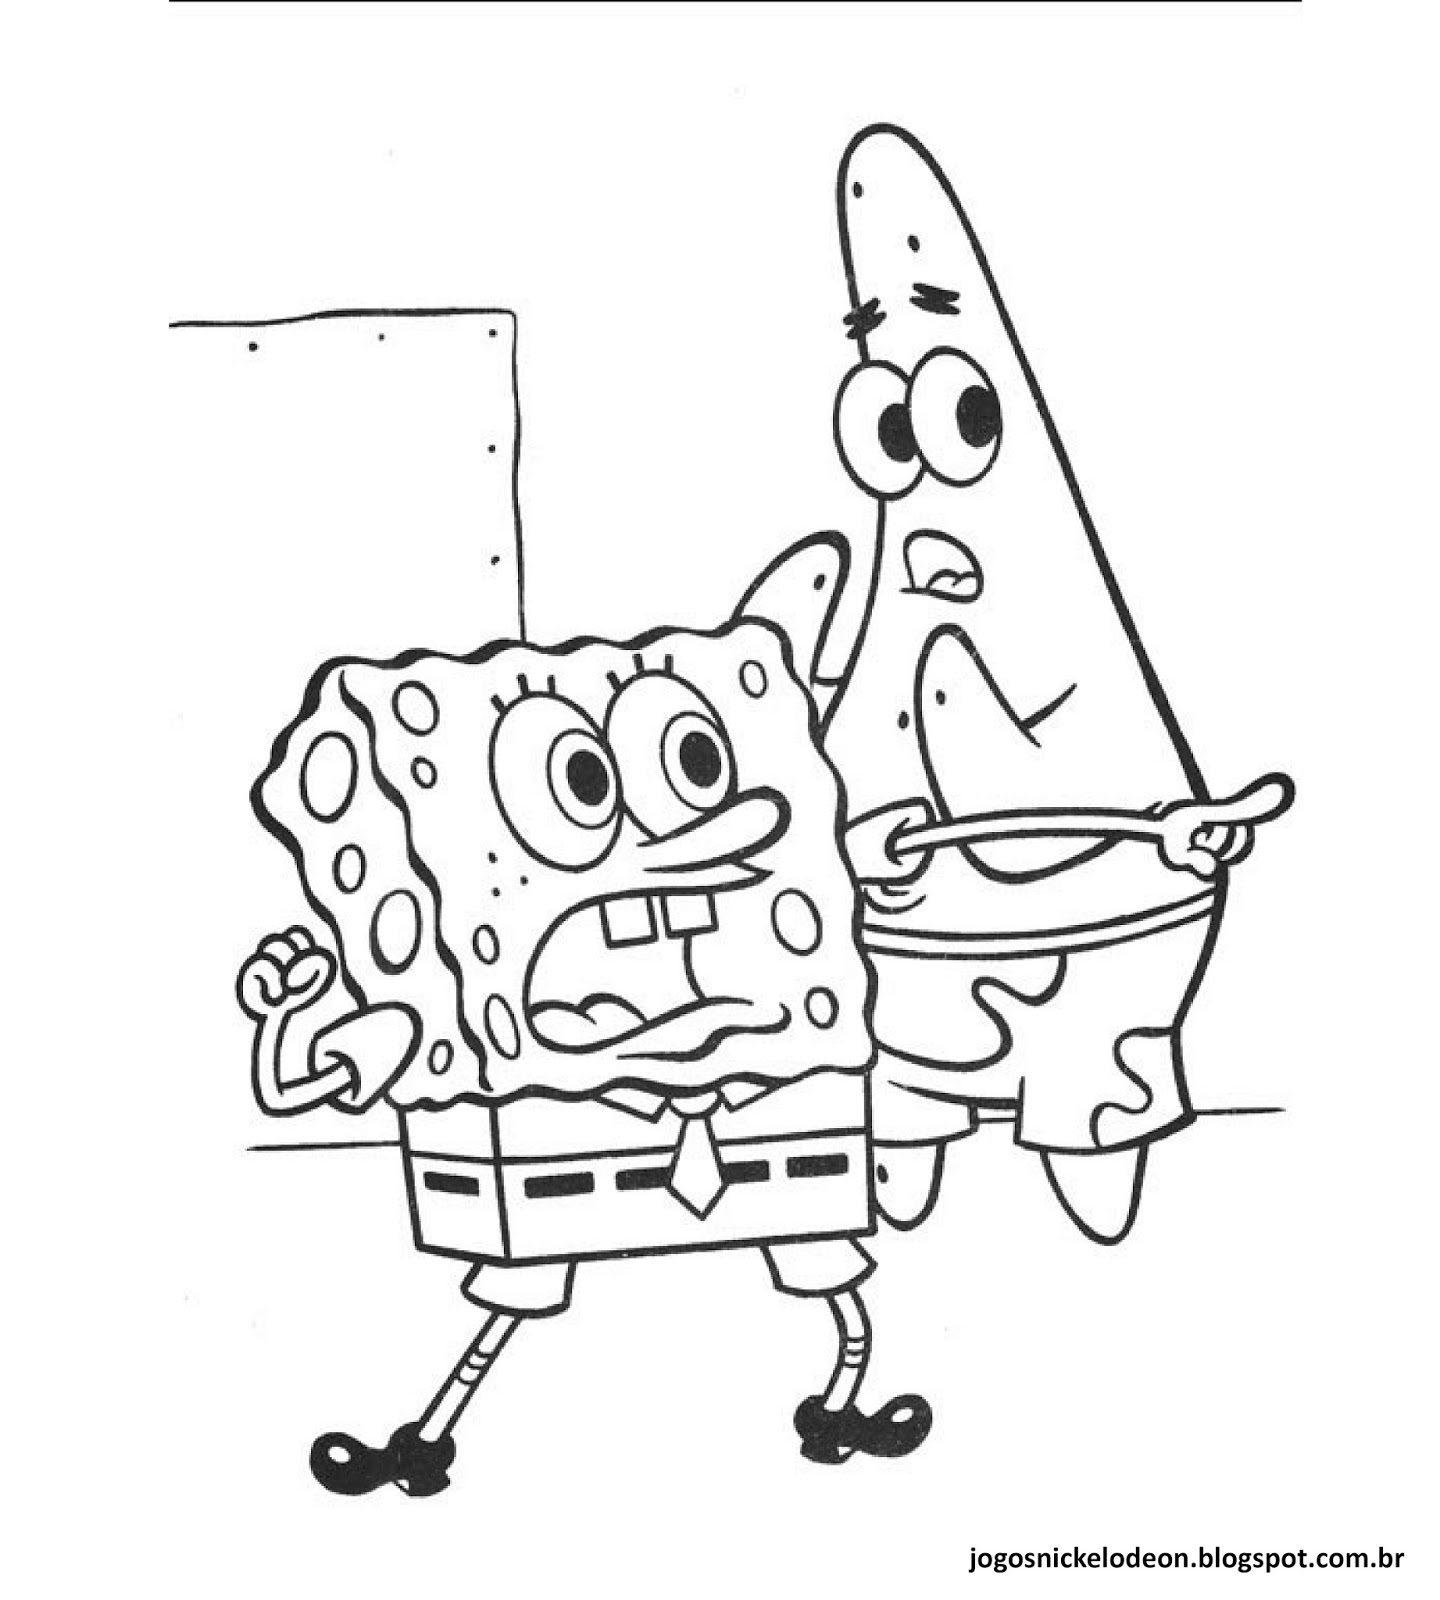 Jogos Da Nickelodeon Desenhos Para Colorir Do Bob Esponja